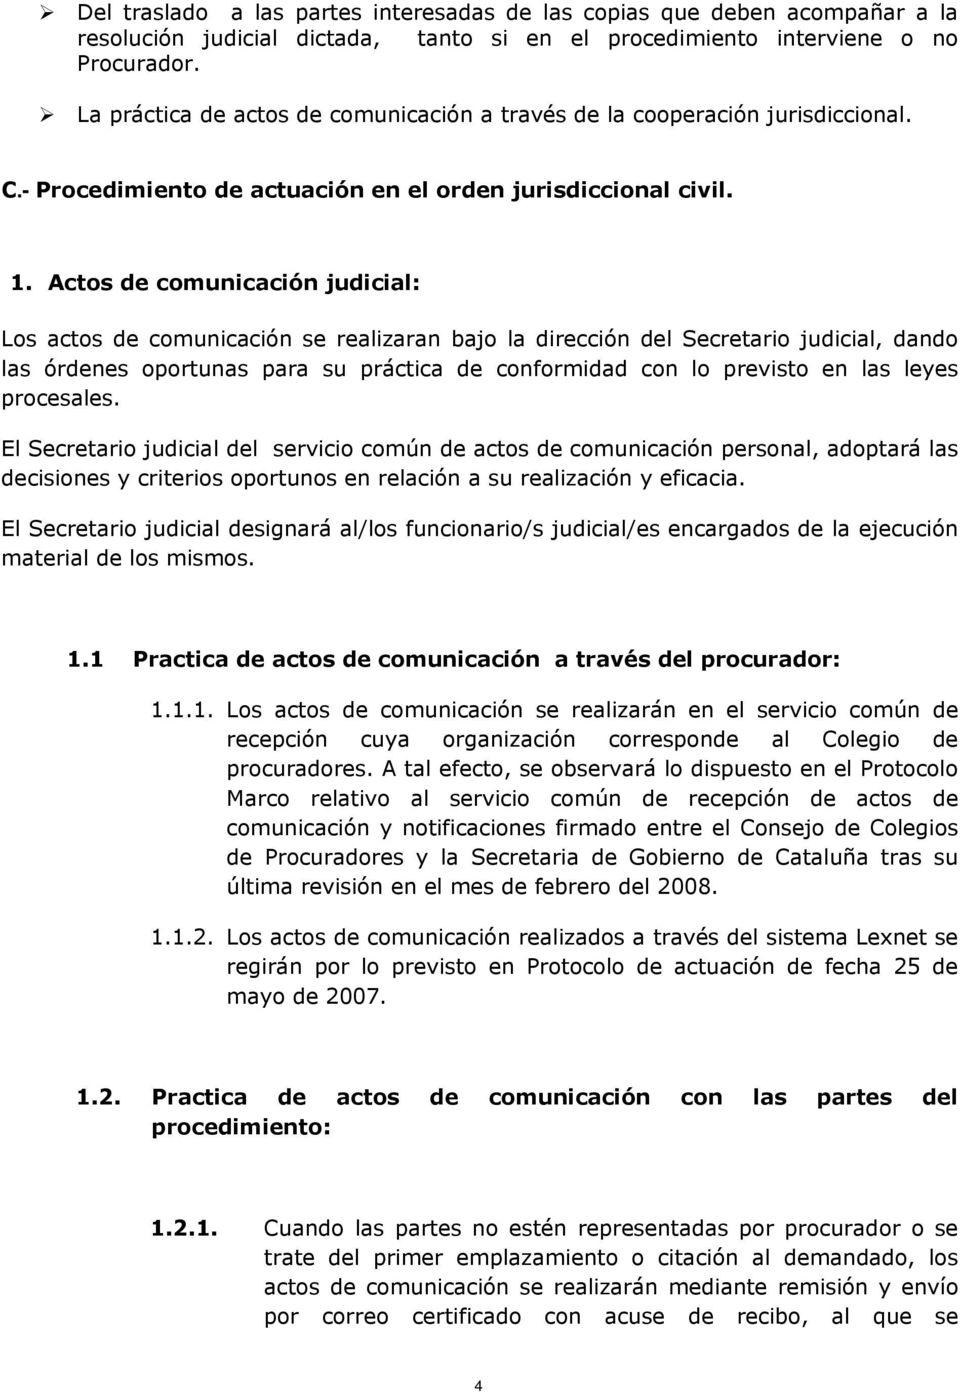 Actos de comunicación judicial: Los actos de comunicación se realizaran bajo la dirección del Secretario judicial, dando las órdenes oportunas para su práctica de conformidad con lo previsto en las